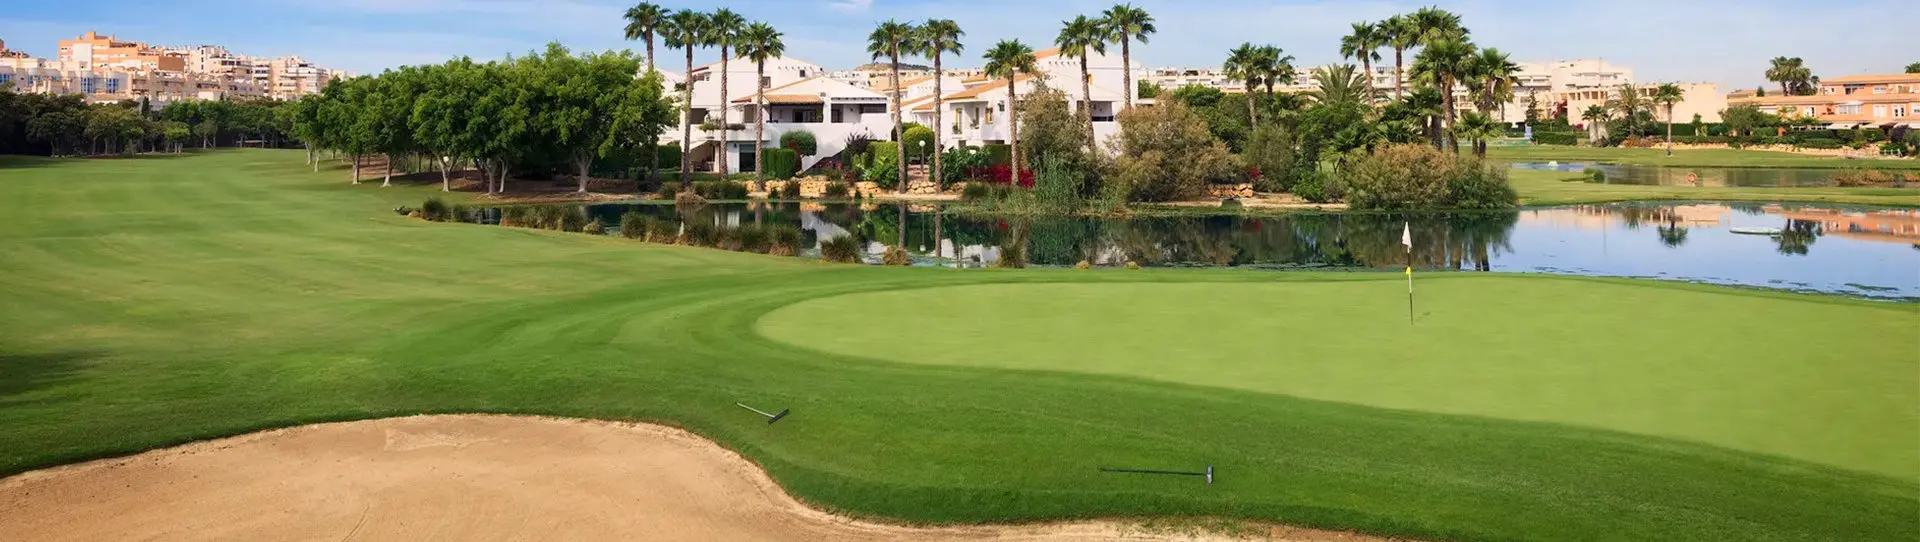 Spain golf courses - Alicante Golf Course - Photo 1